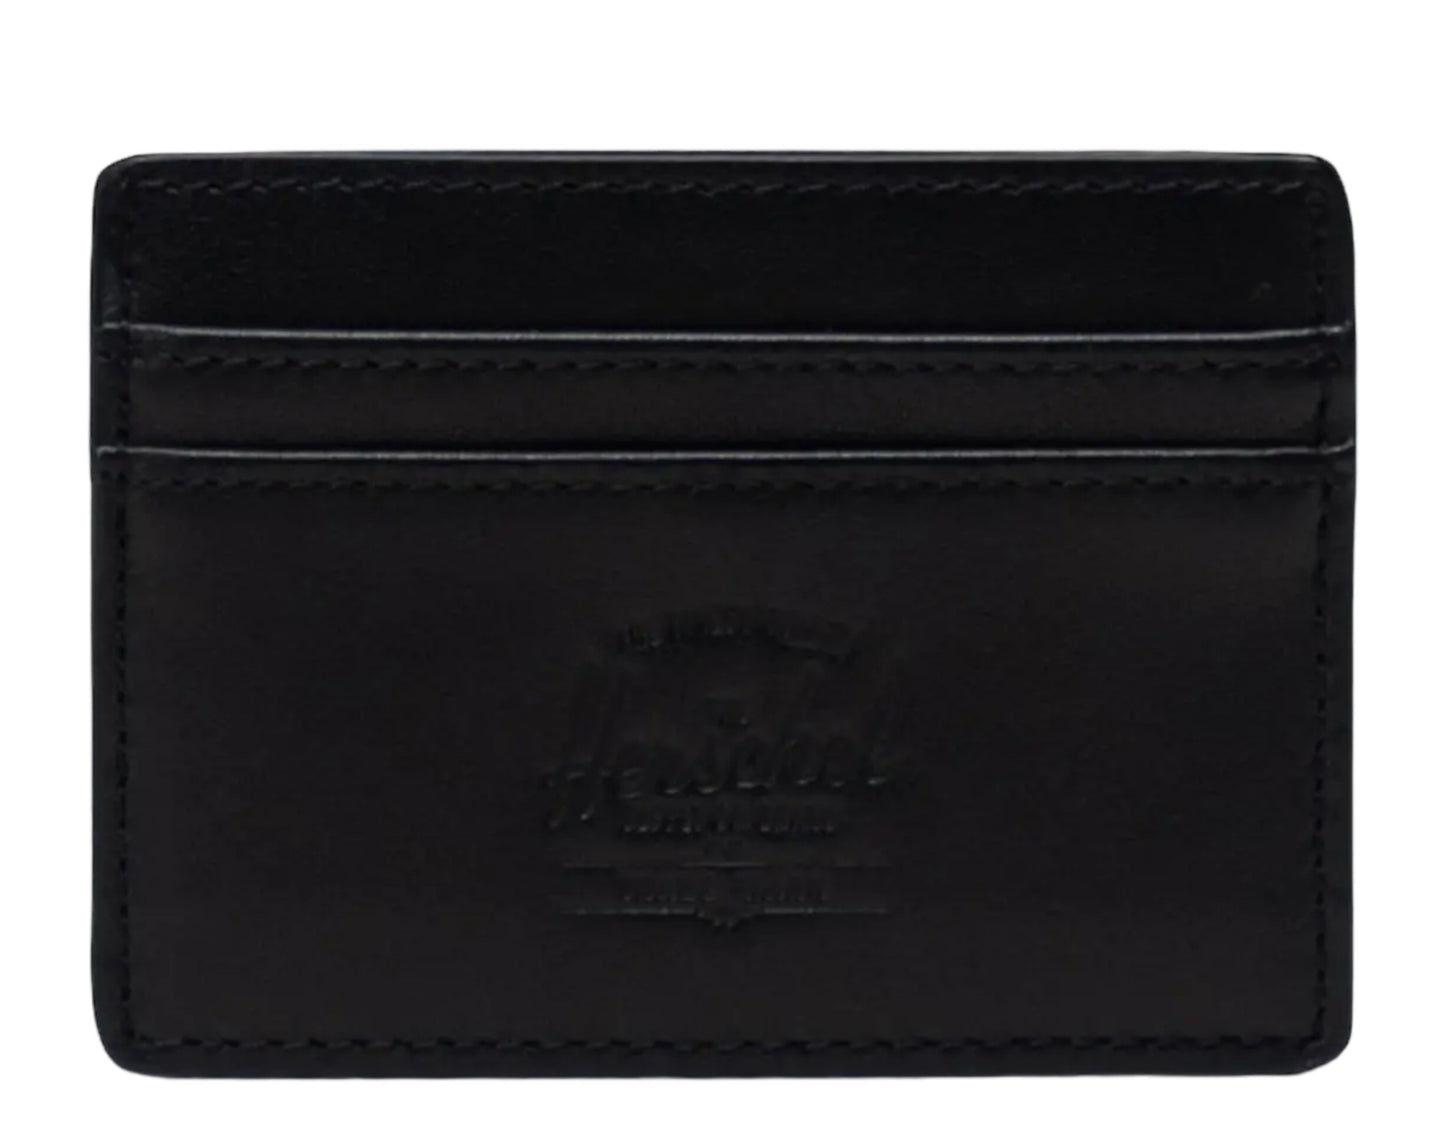 Herschel Supply Co. Charlie Cardholder Wallet Leather